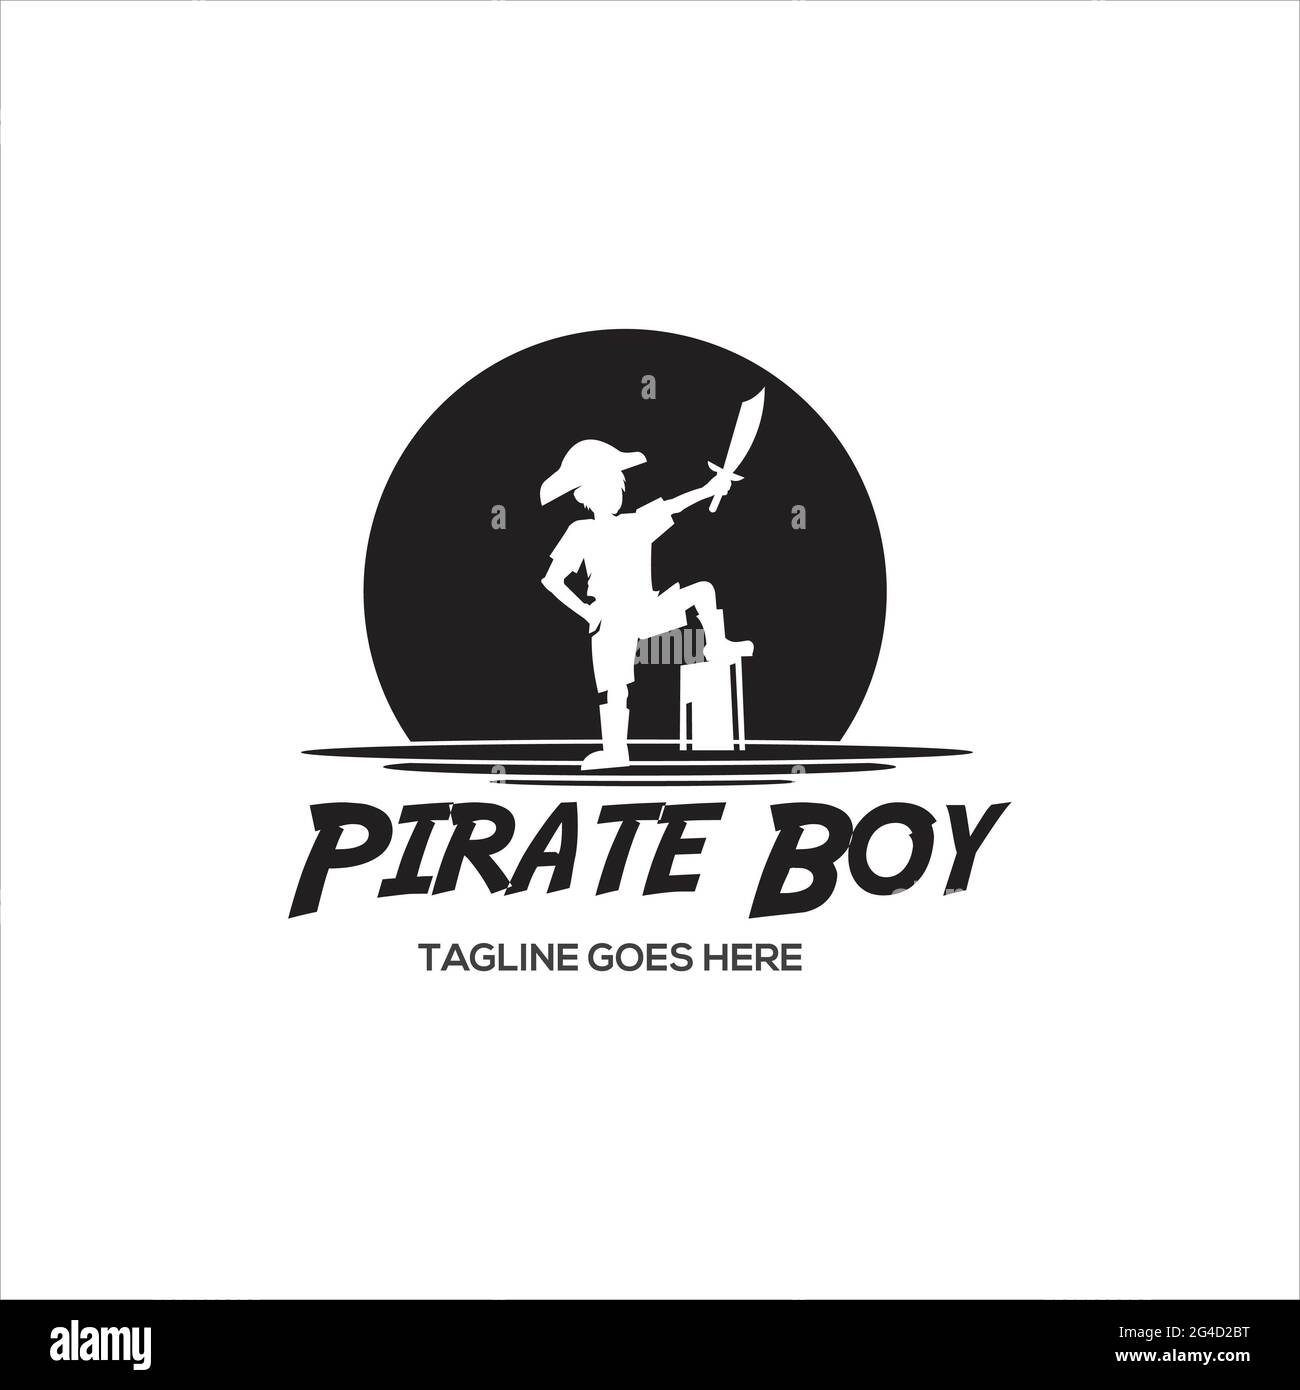 Pirate Boy Captain logo vector exclusive logo design inspiration Stock Photo